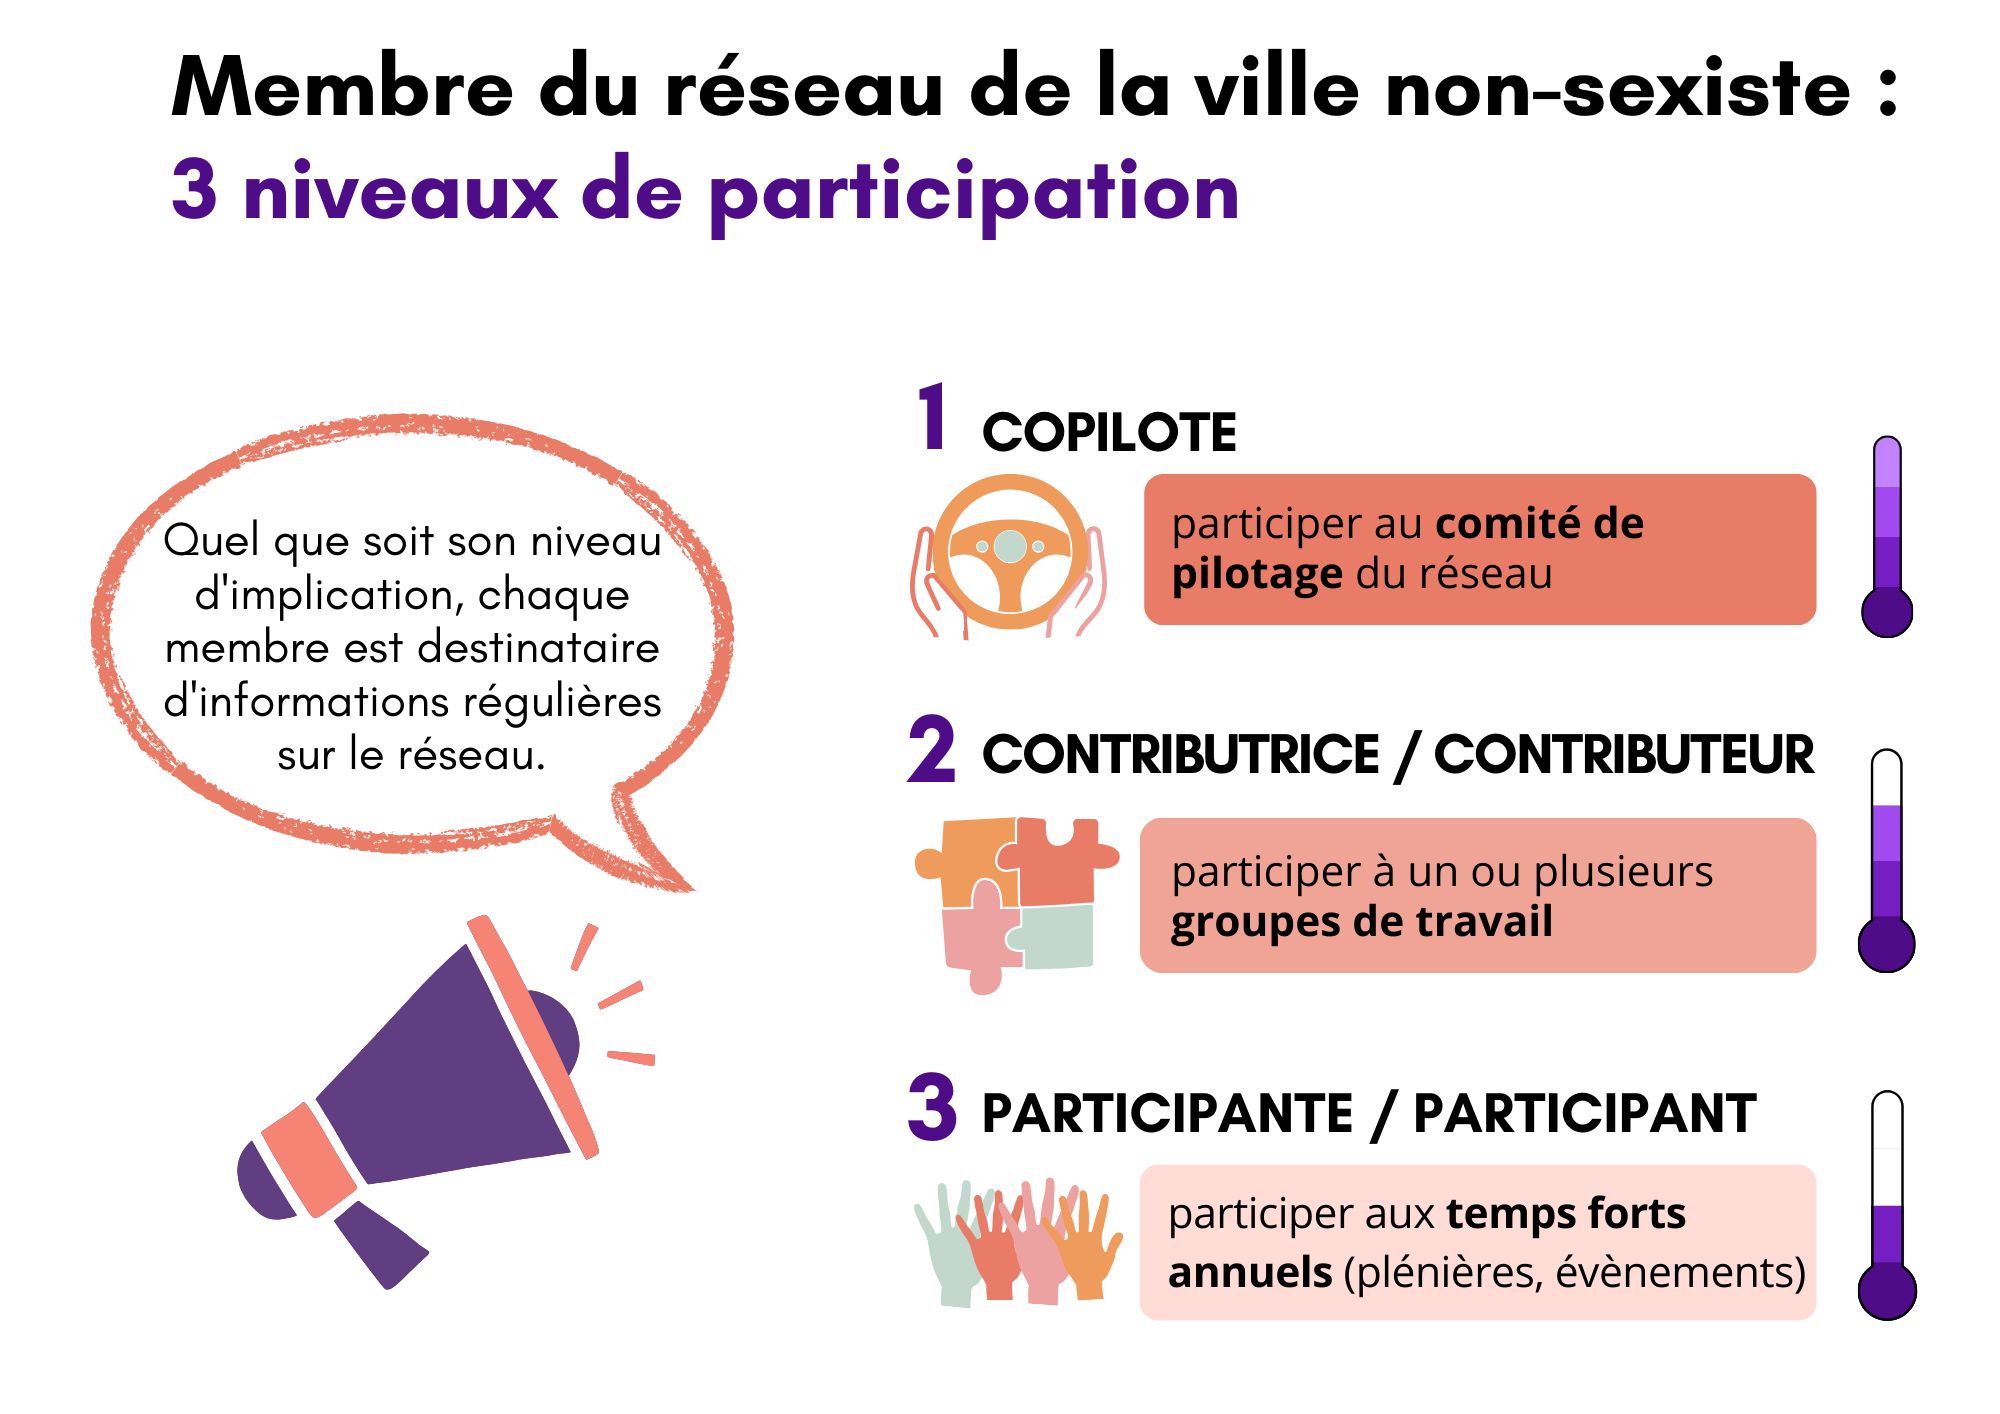 Les 3 niveaux de participation au réseau ville non-sexiste : le copilotage, la contribution, la participation